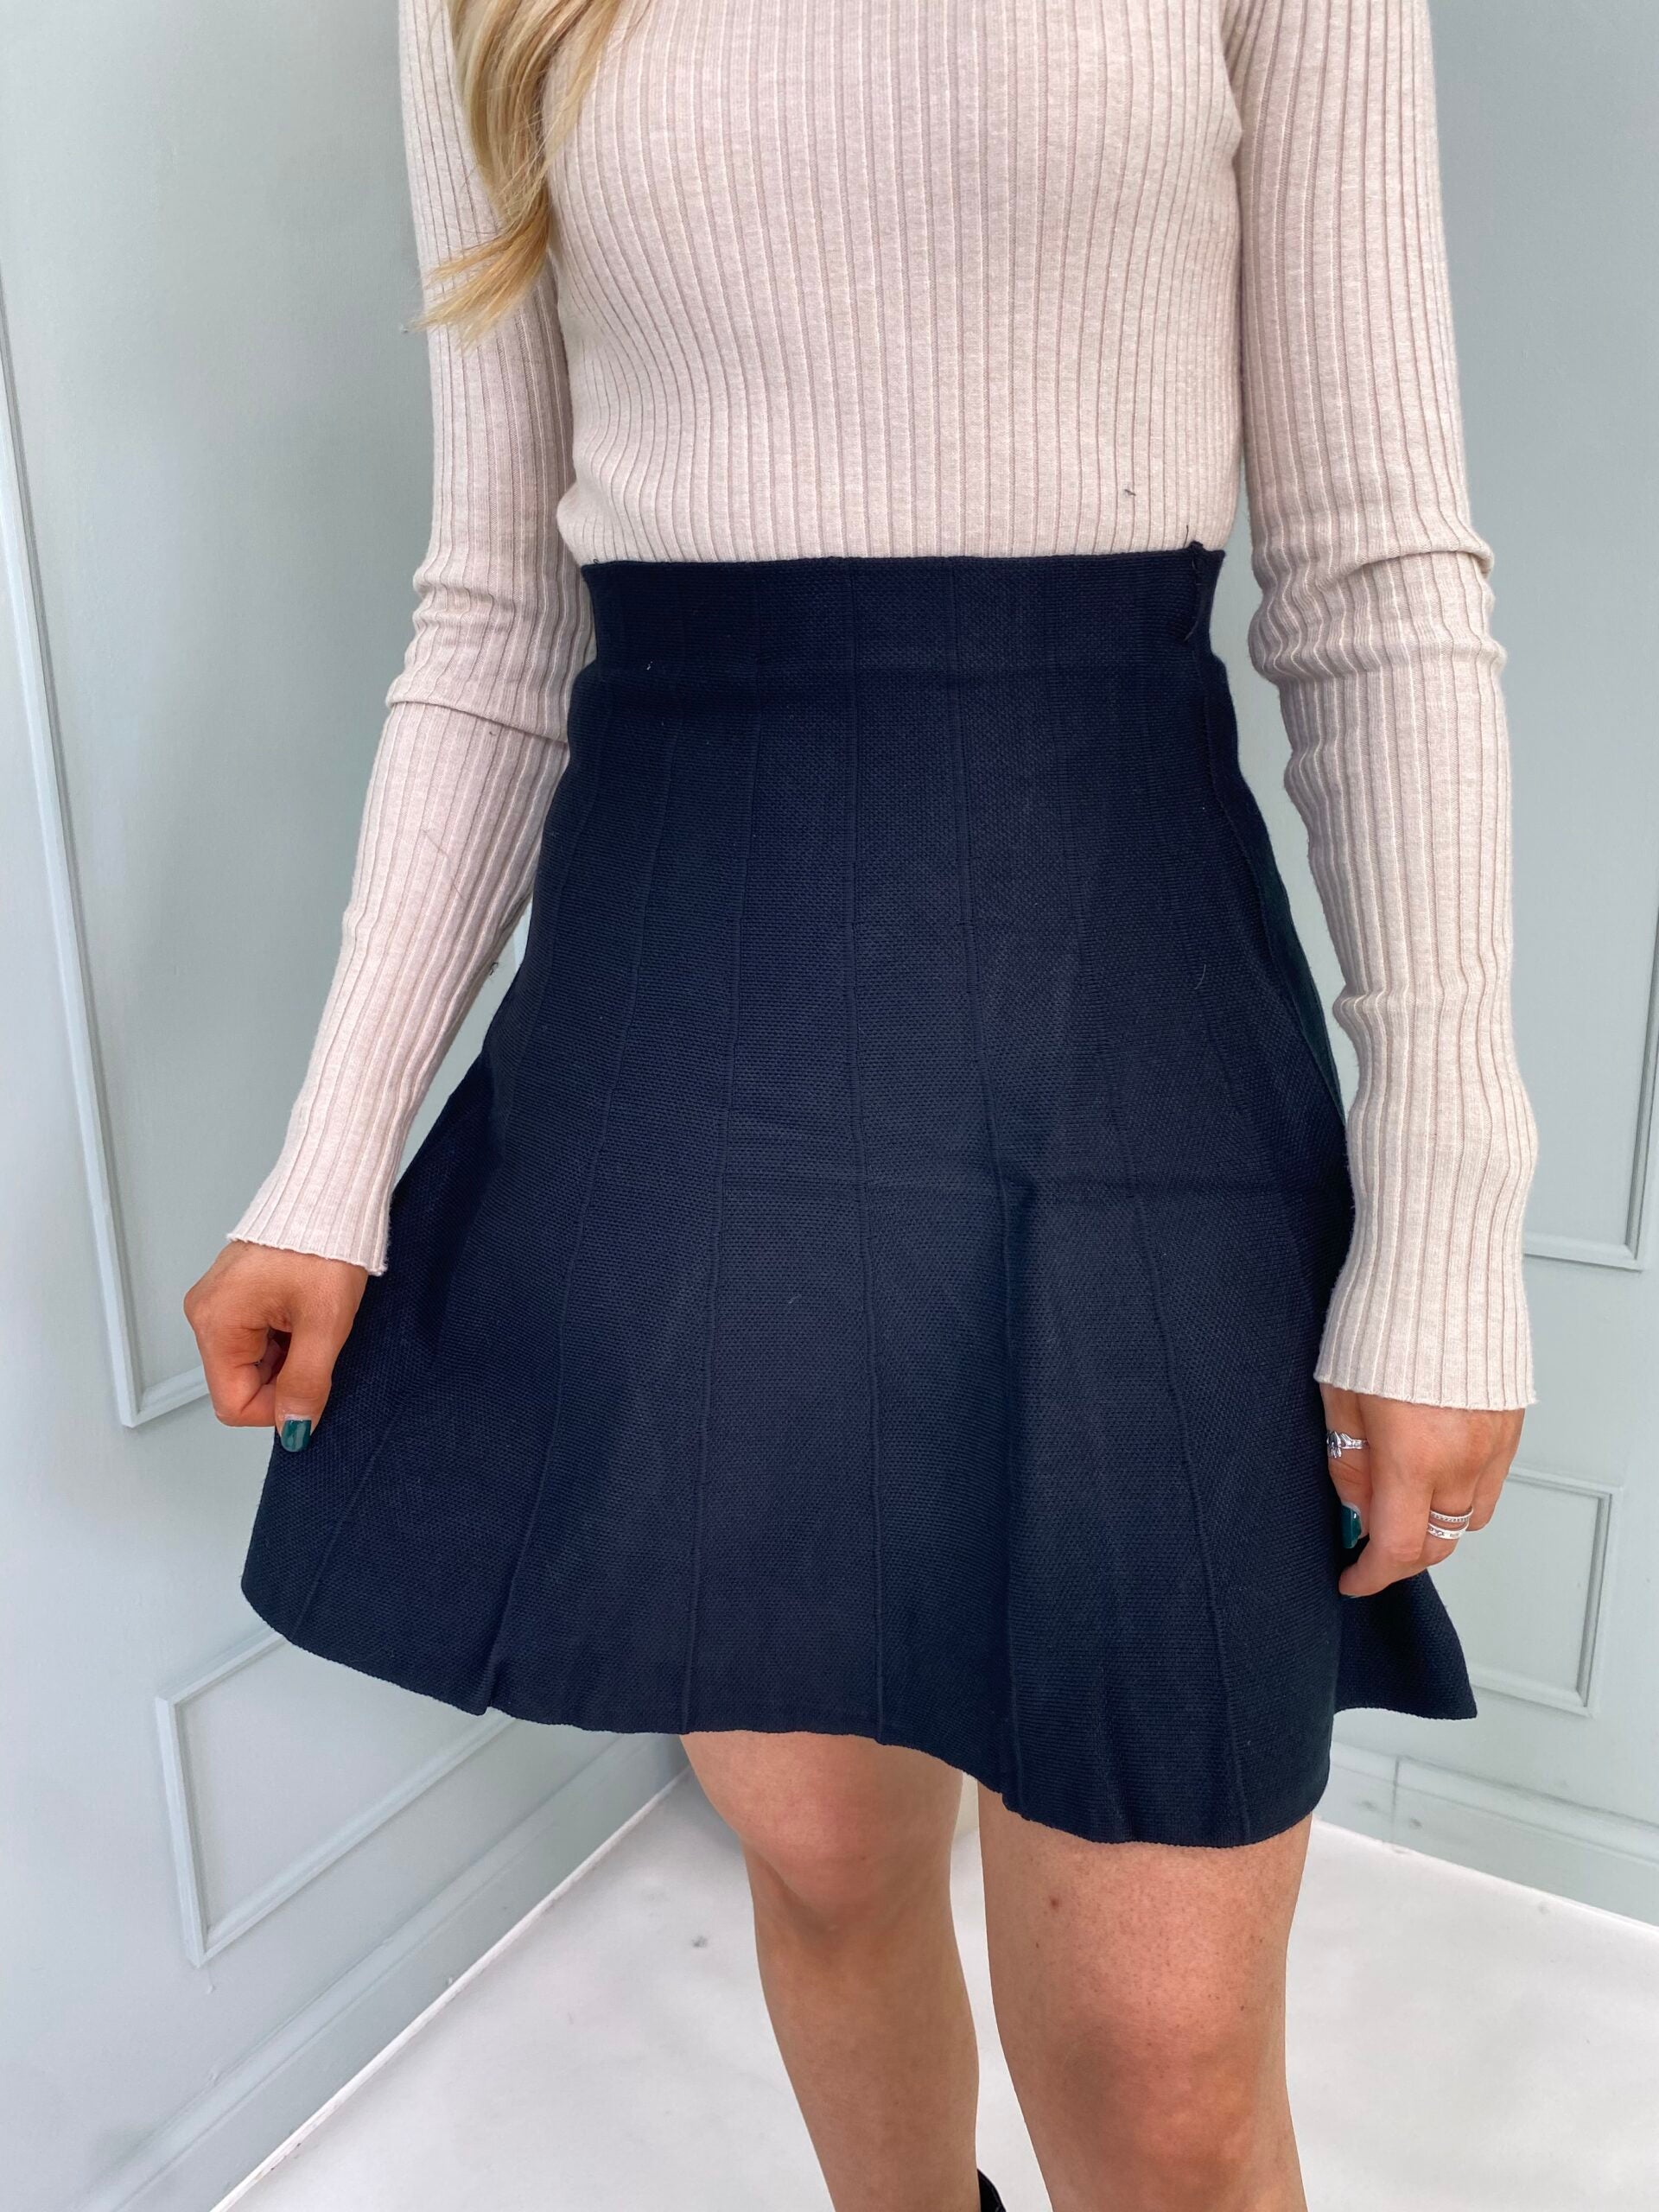 The Laken - Knitted Skirt